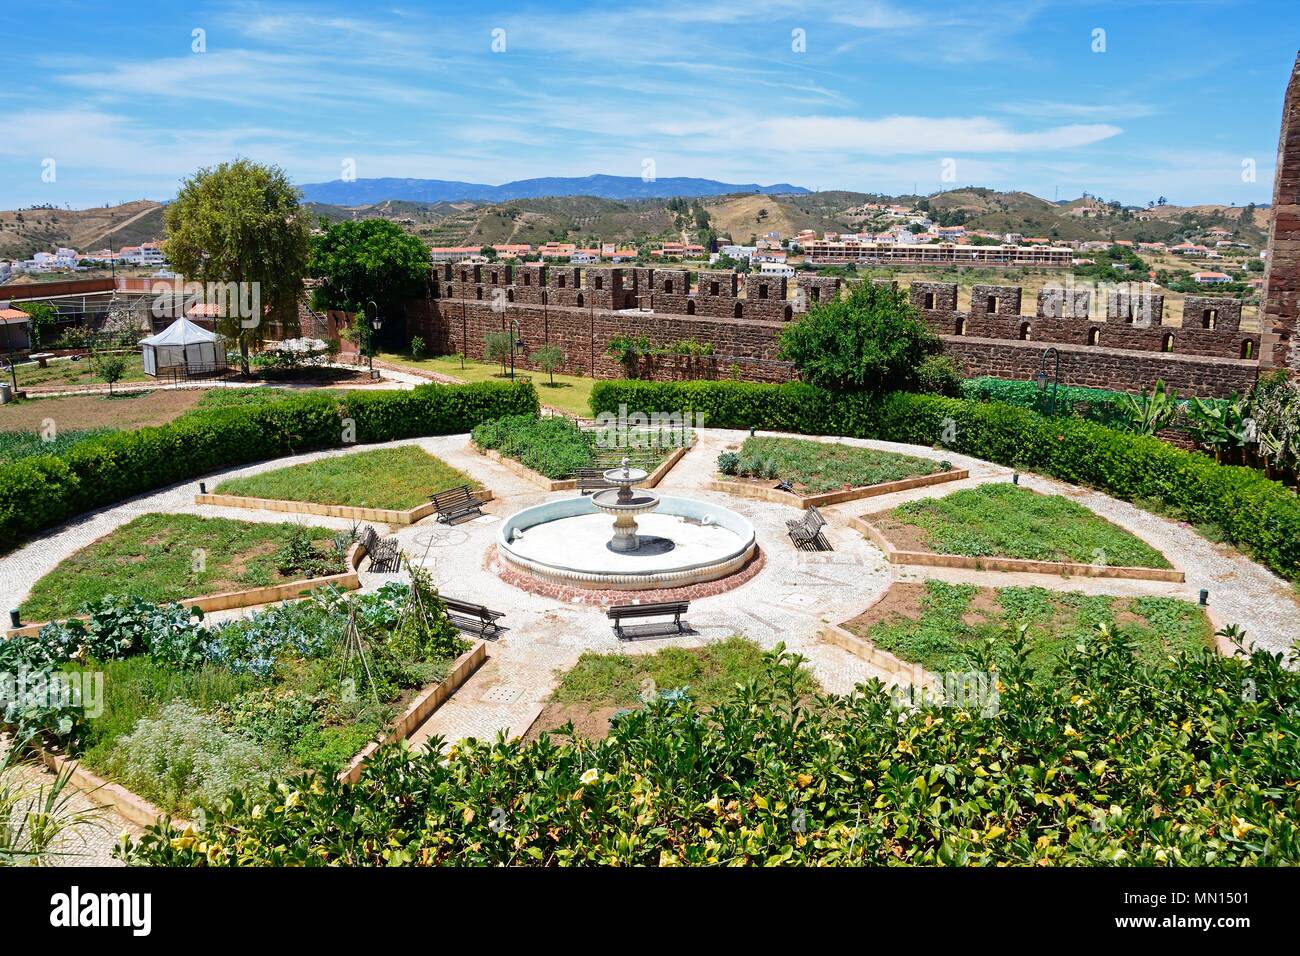 Giardini botanici con una fontana al centro all'interno del castello medievale con merlature alla parte posteriore, Silves, del Portogallo, dell'Europa. Foto Stock